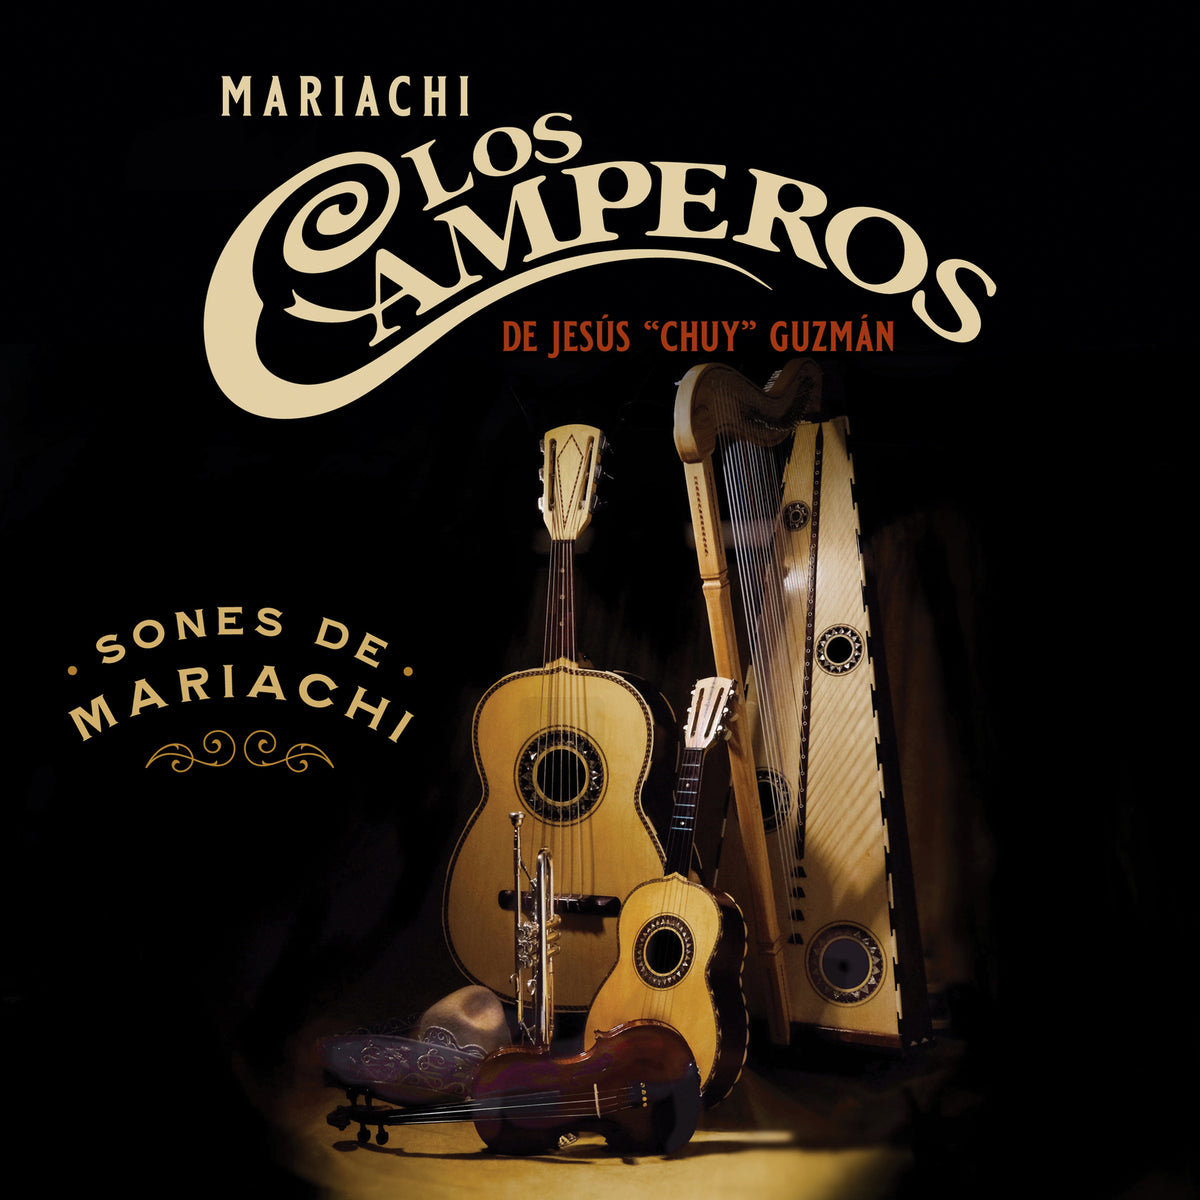 Mariachi Los Camperos - Sones de Mariachi - SFW40586